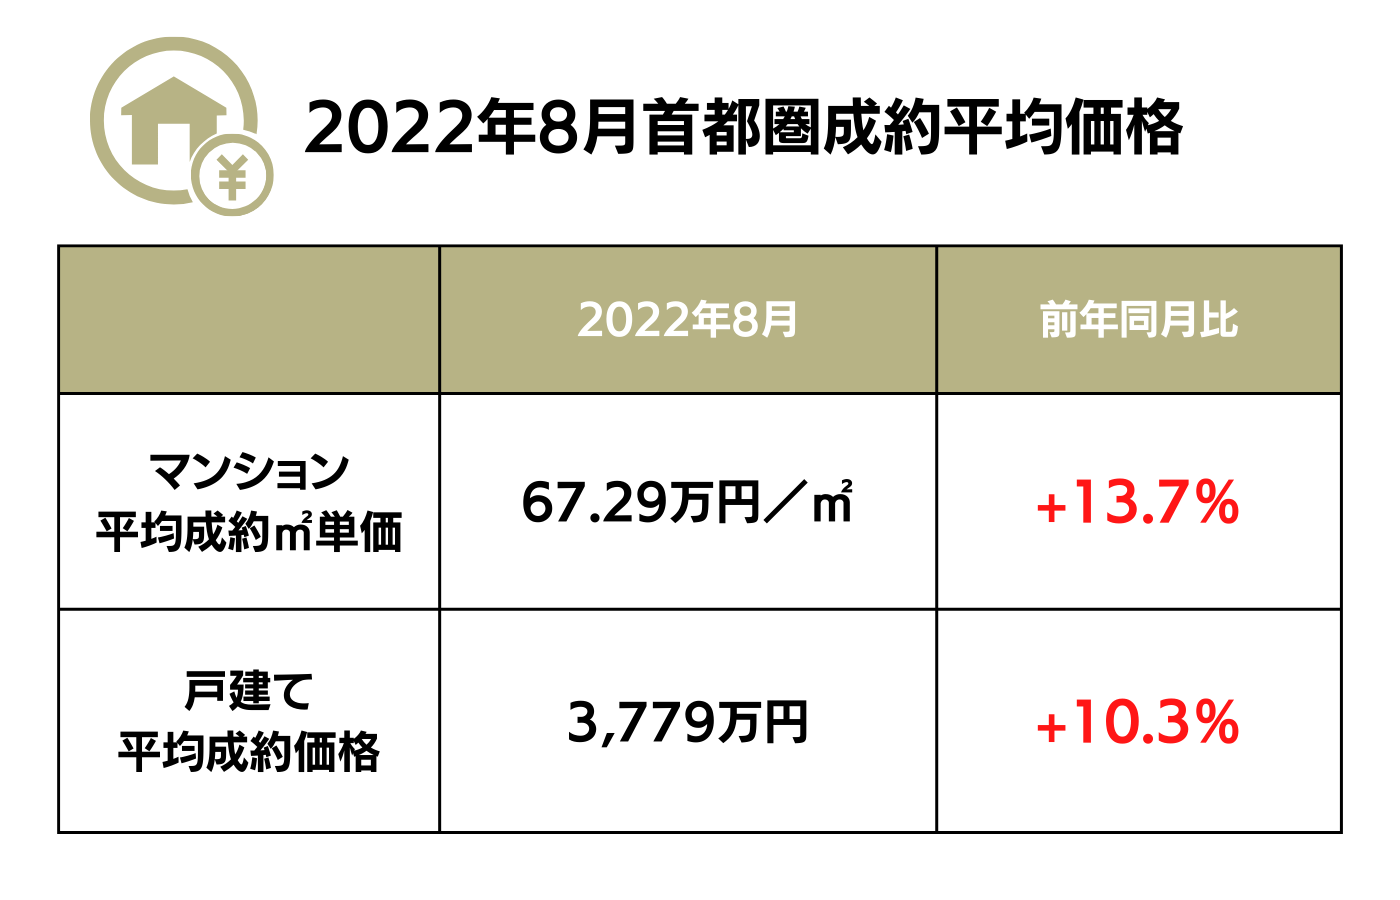 2022年8月首都園成約平均価格